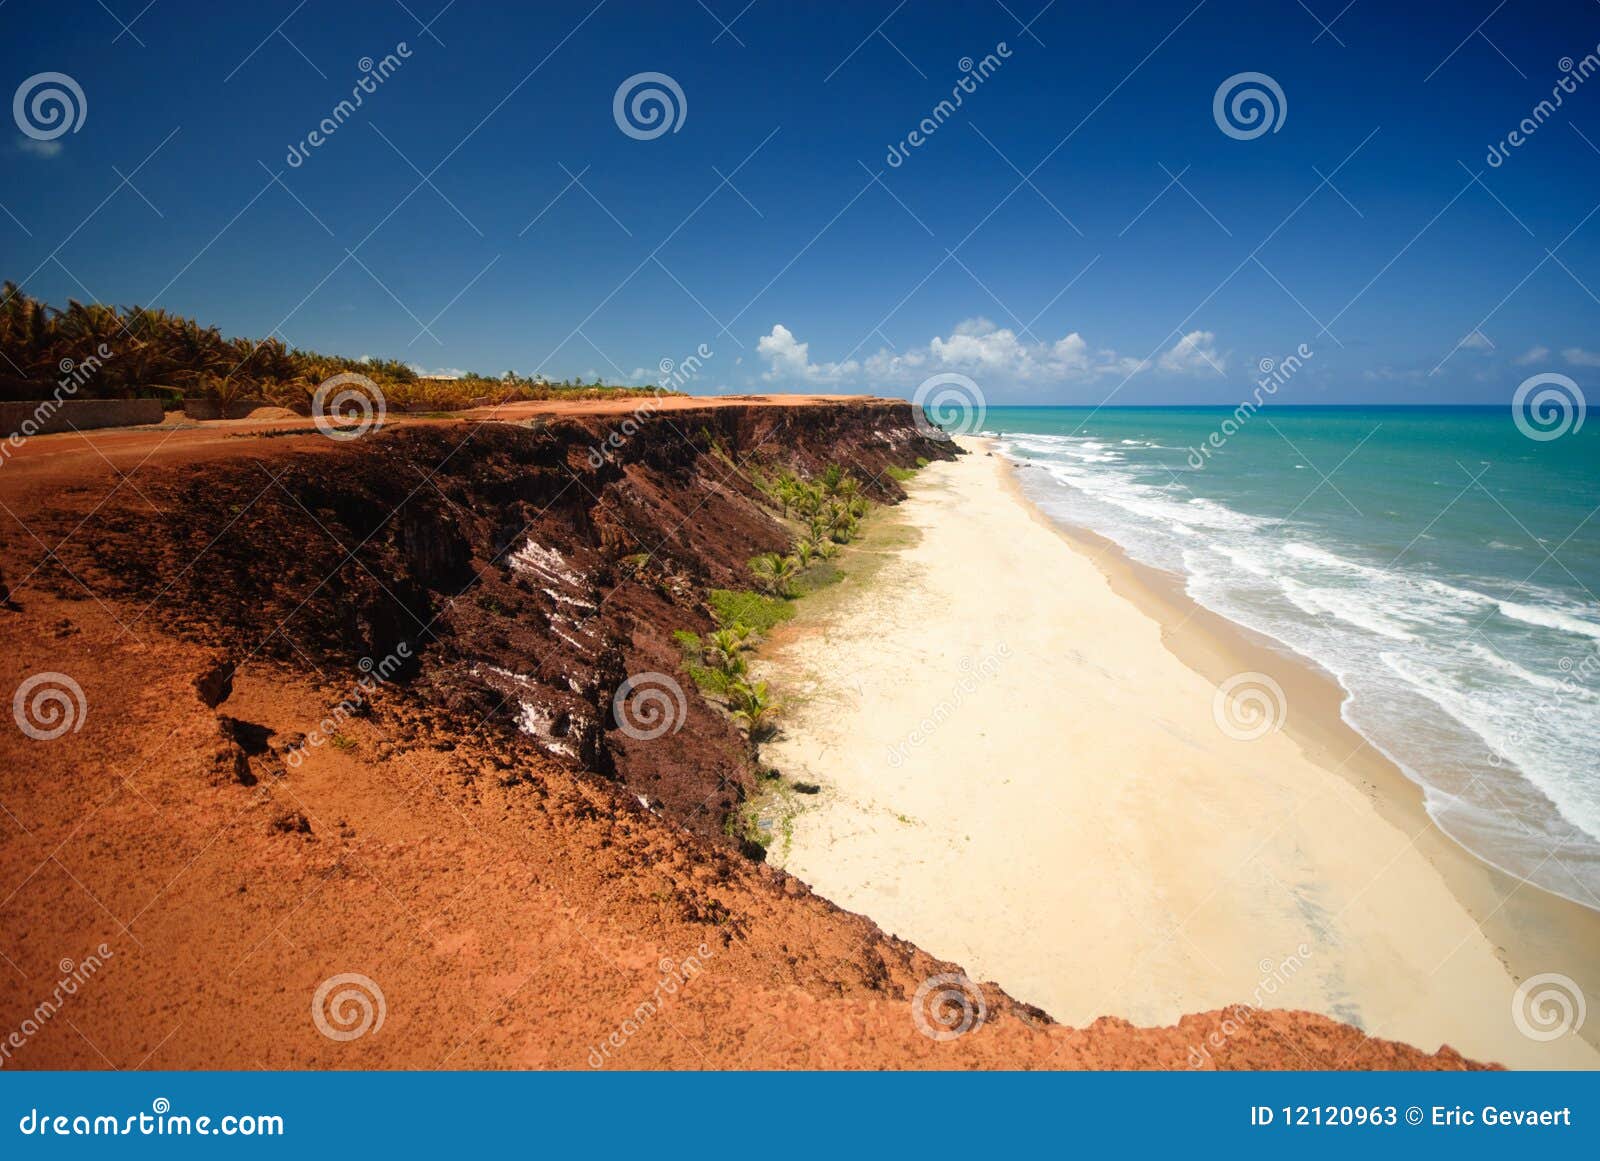 cliffs and beach at praia das minas